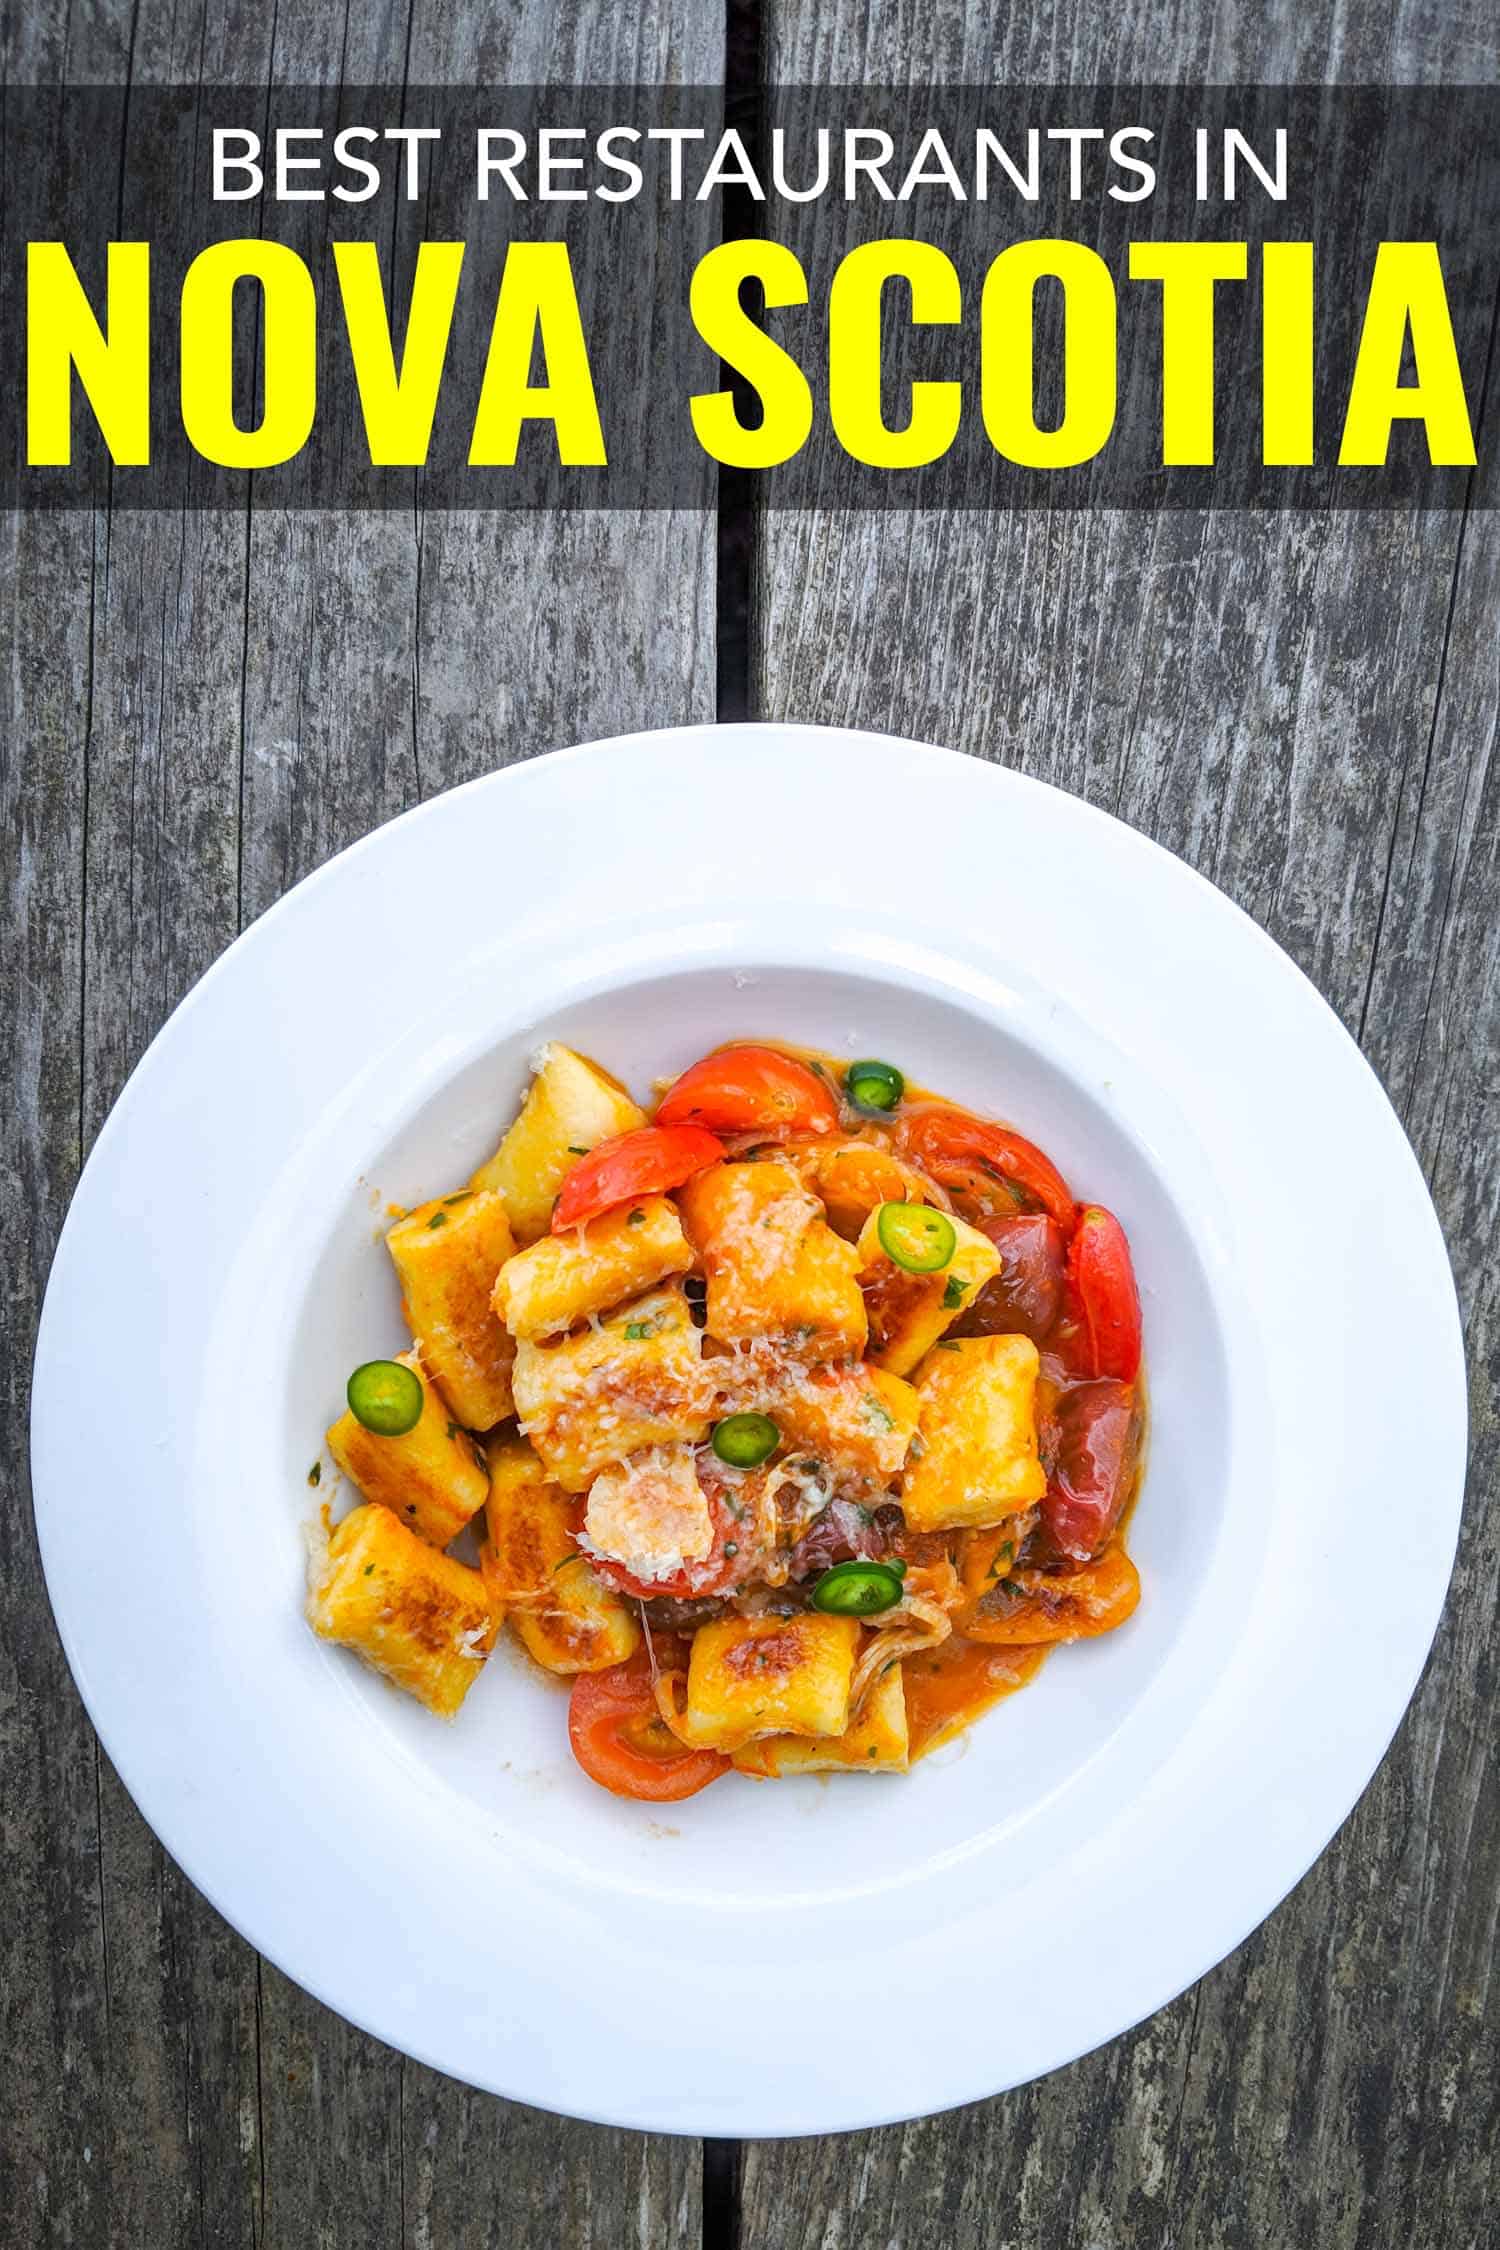 Tomato gnocchi from Dvine Morsels one of the most popular Nova Scotia restaurants